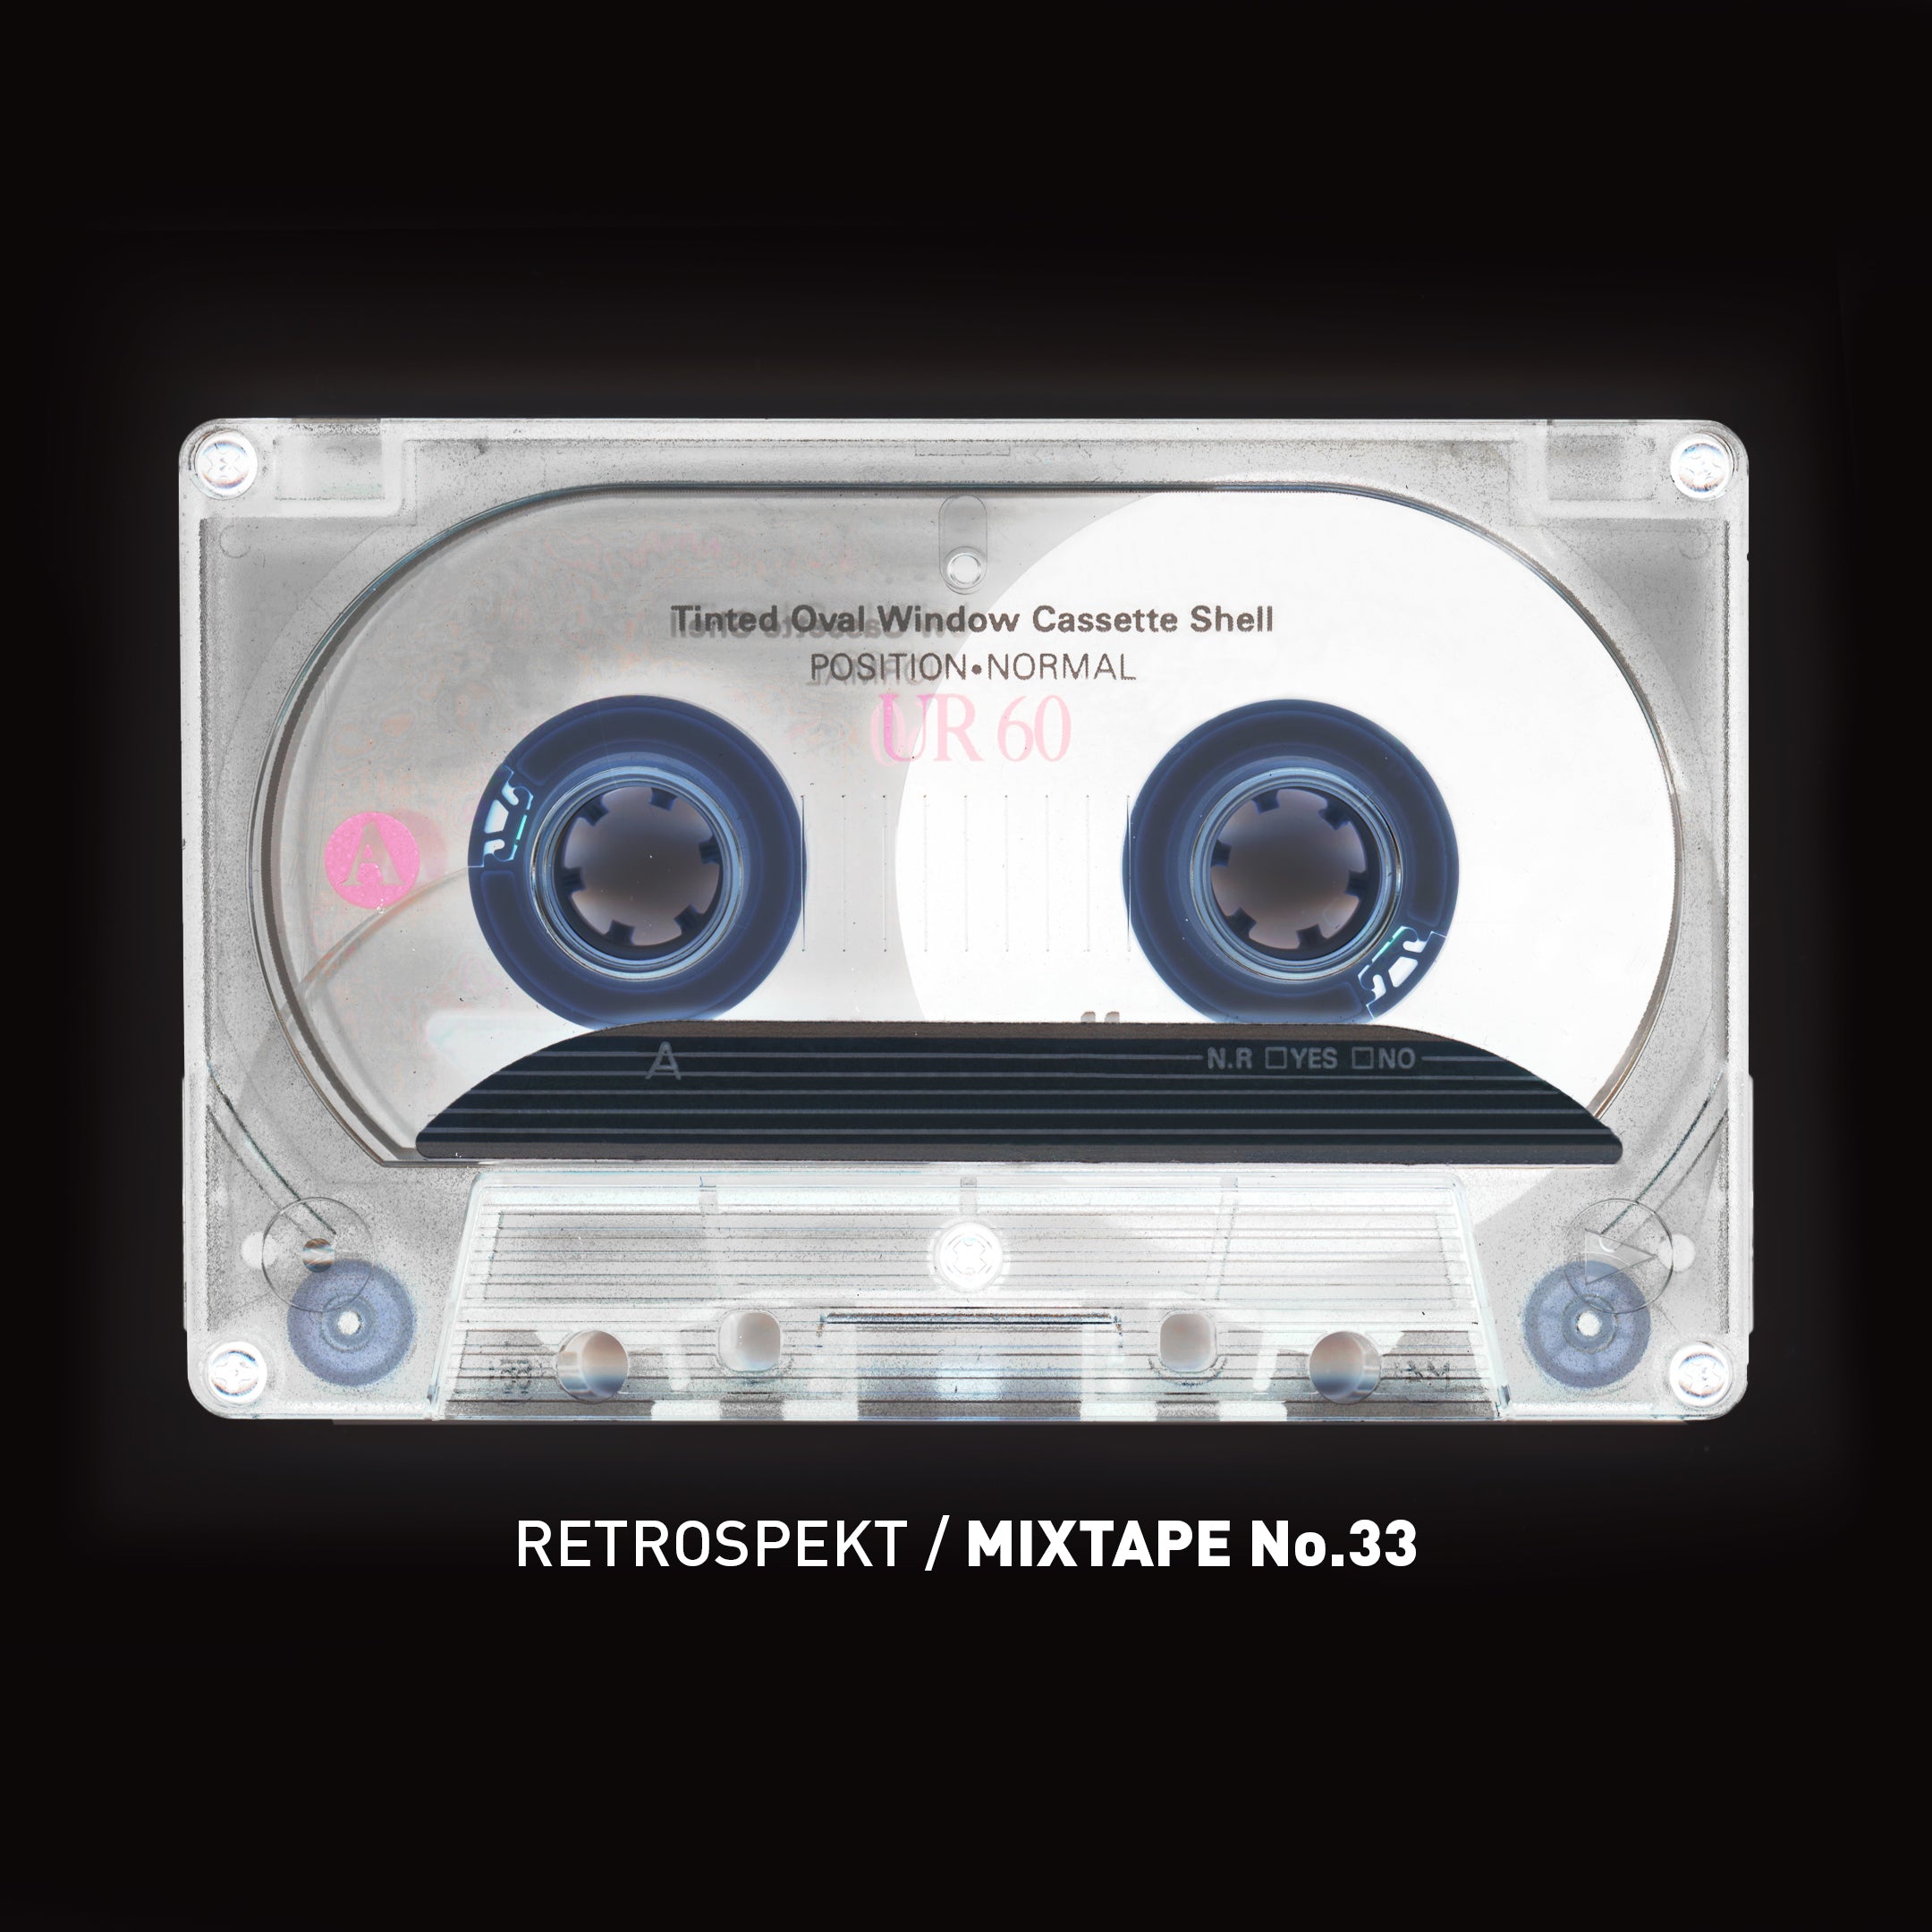 Mixtape 33